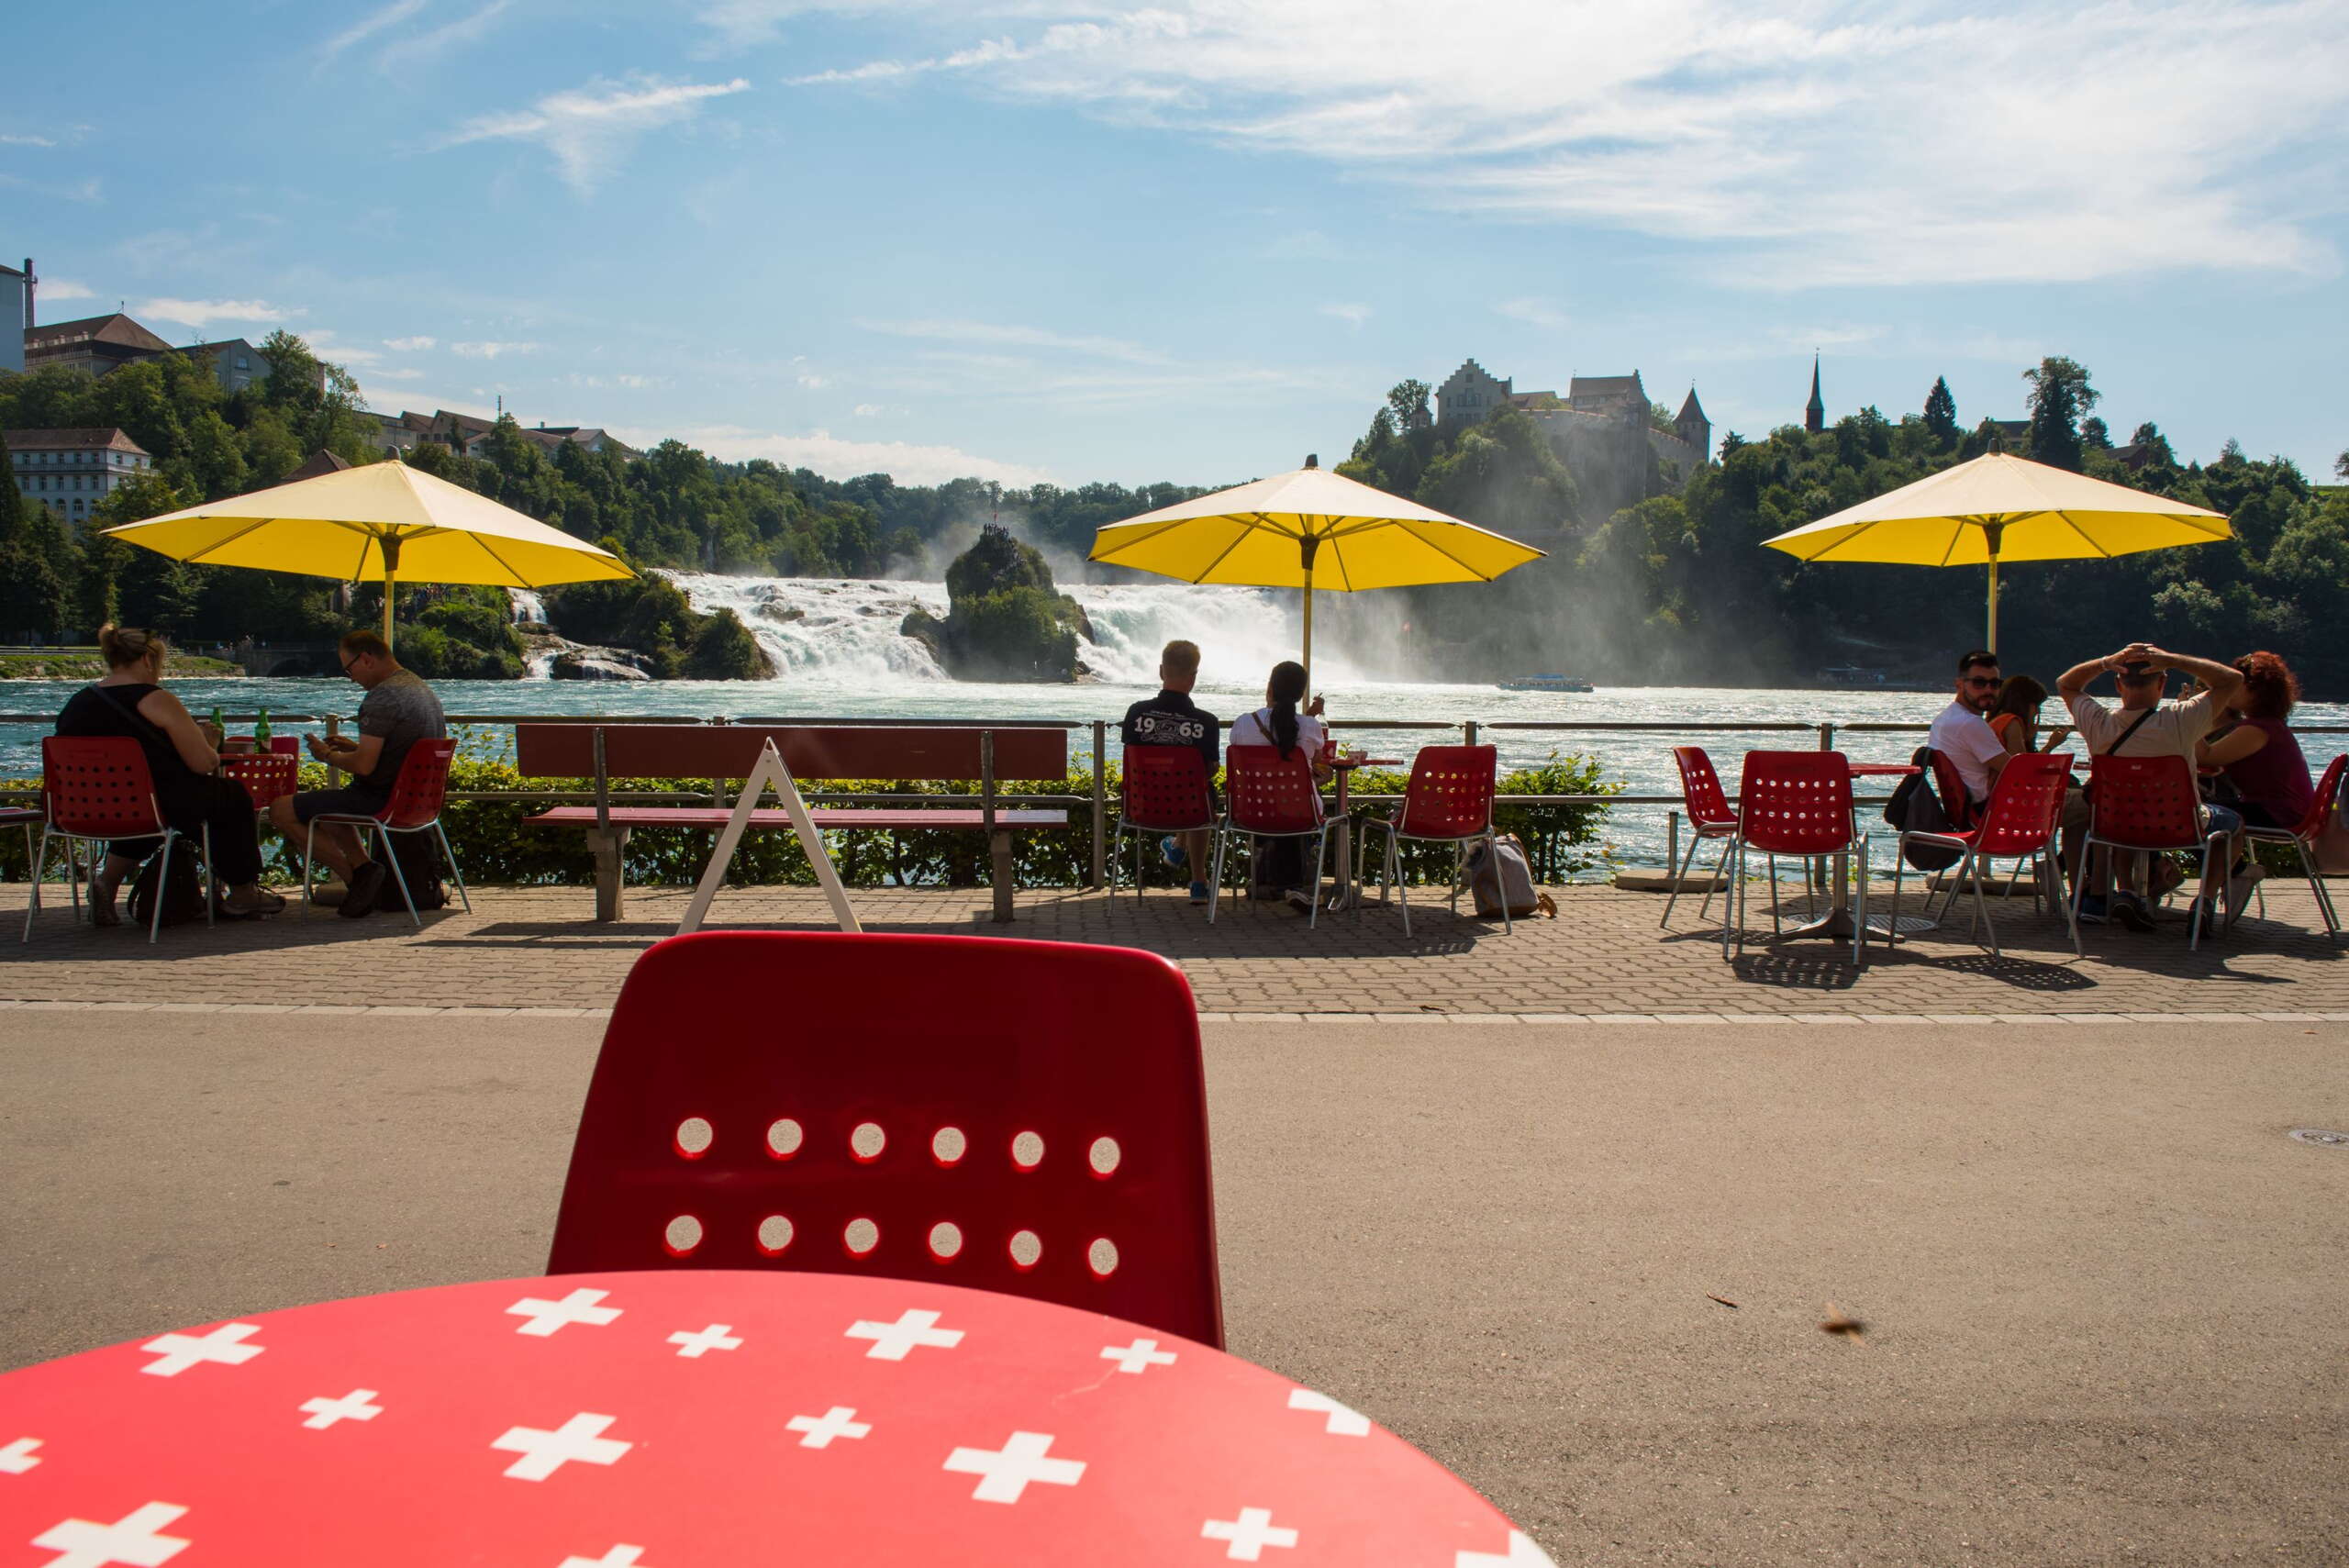 Rote Tische mit weissen Schweizer Kreuzen, rote Stühle und gelbe Sonnenschirme vom Restaurant Park am Rheinfall. Im Hintergrund ist der Rheinfall.